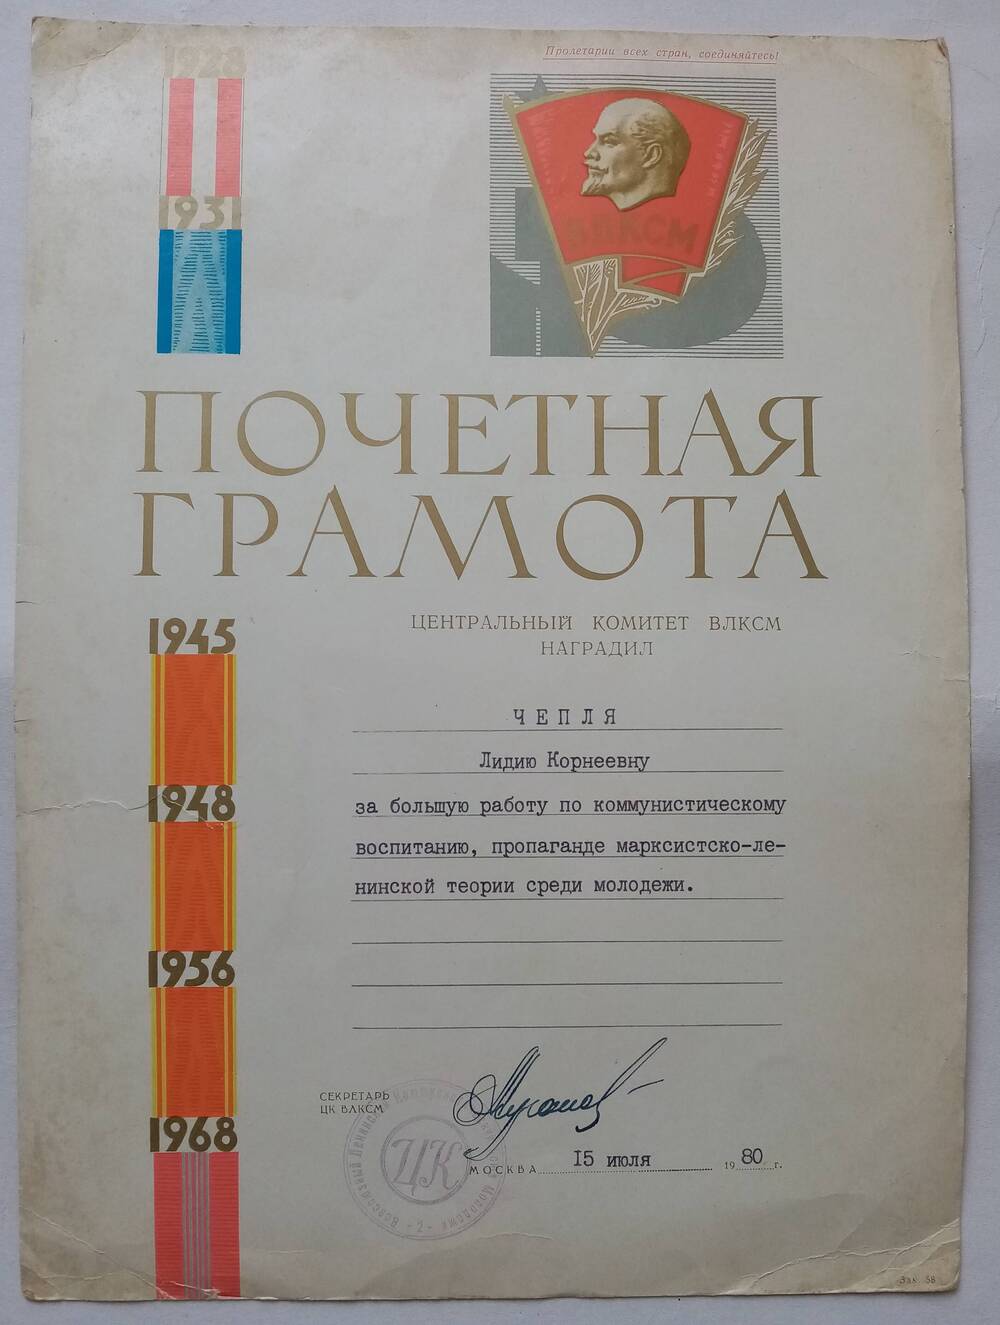 Почетная грамота ЦК ВЛКСМ  от 15.07.1980 года Чепля Лидии Корнеевне за большую работу по коммунистическому воспитанию молодежи